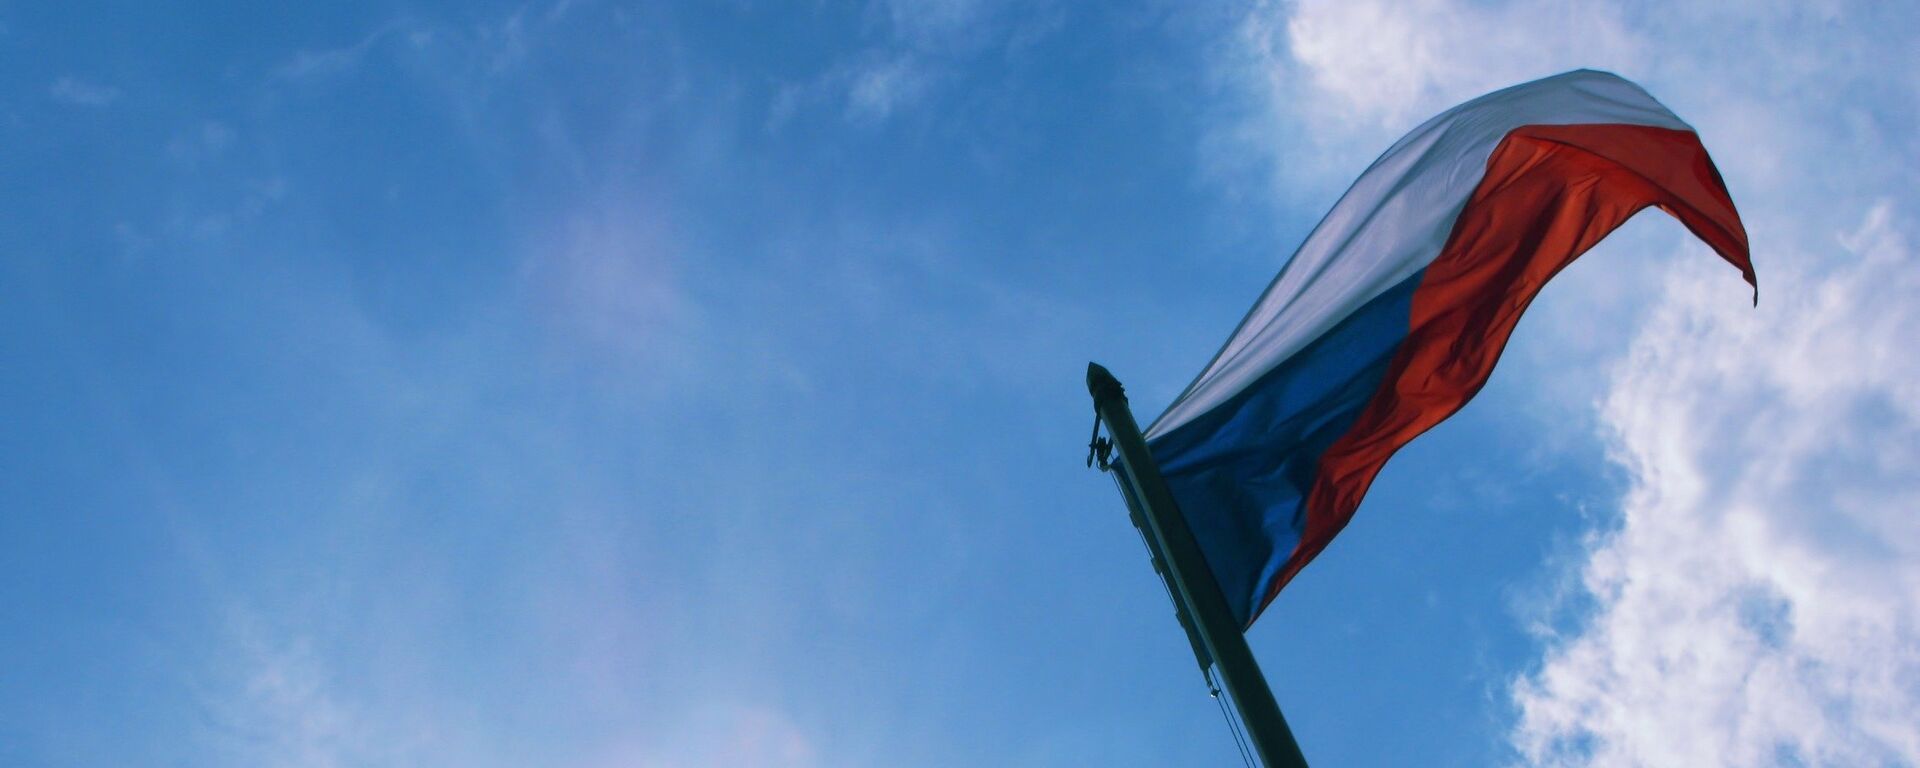 Bandera checa - Sputnik Mundo, 1920, 19.04.2021